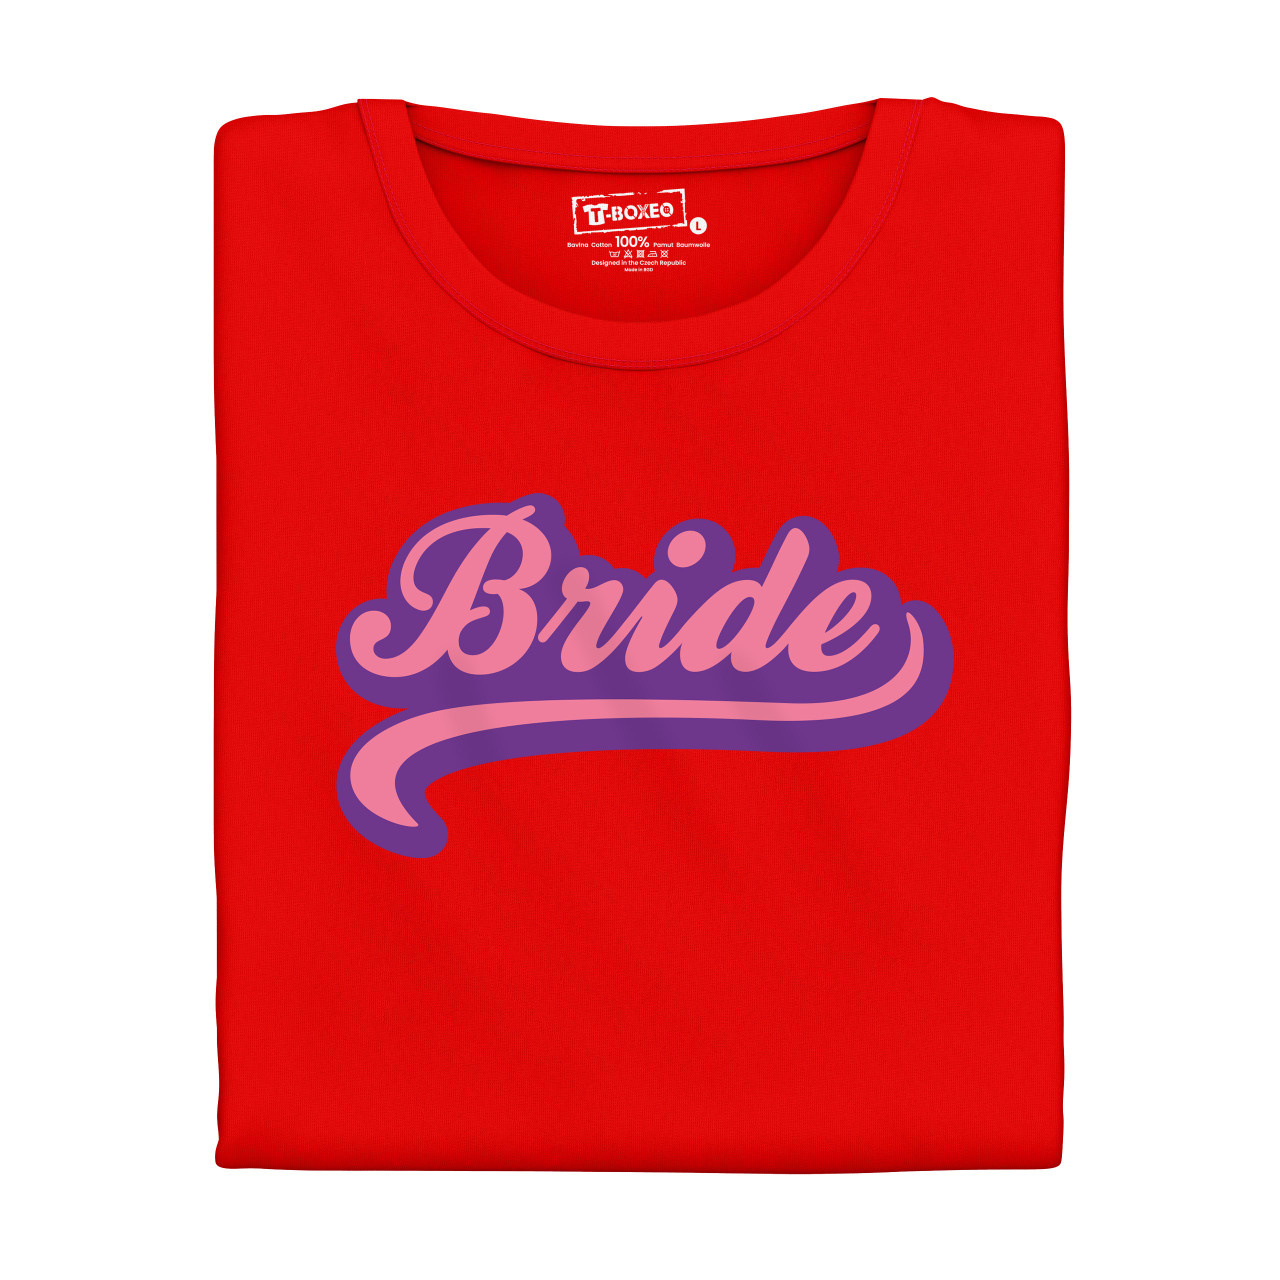 Dámské tričko s potiskem “Bride”